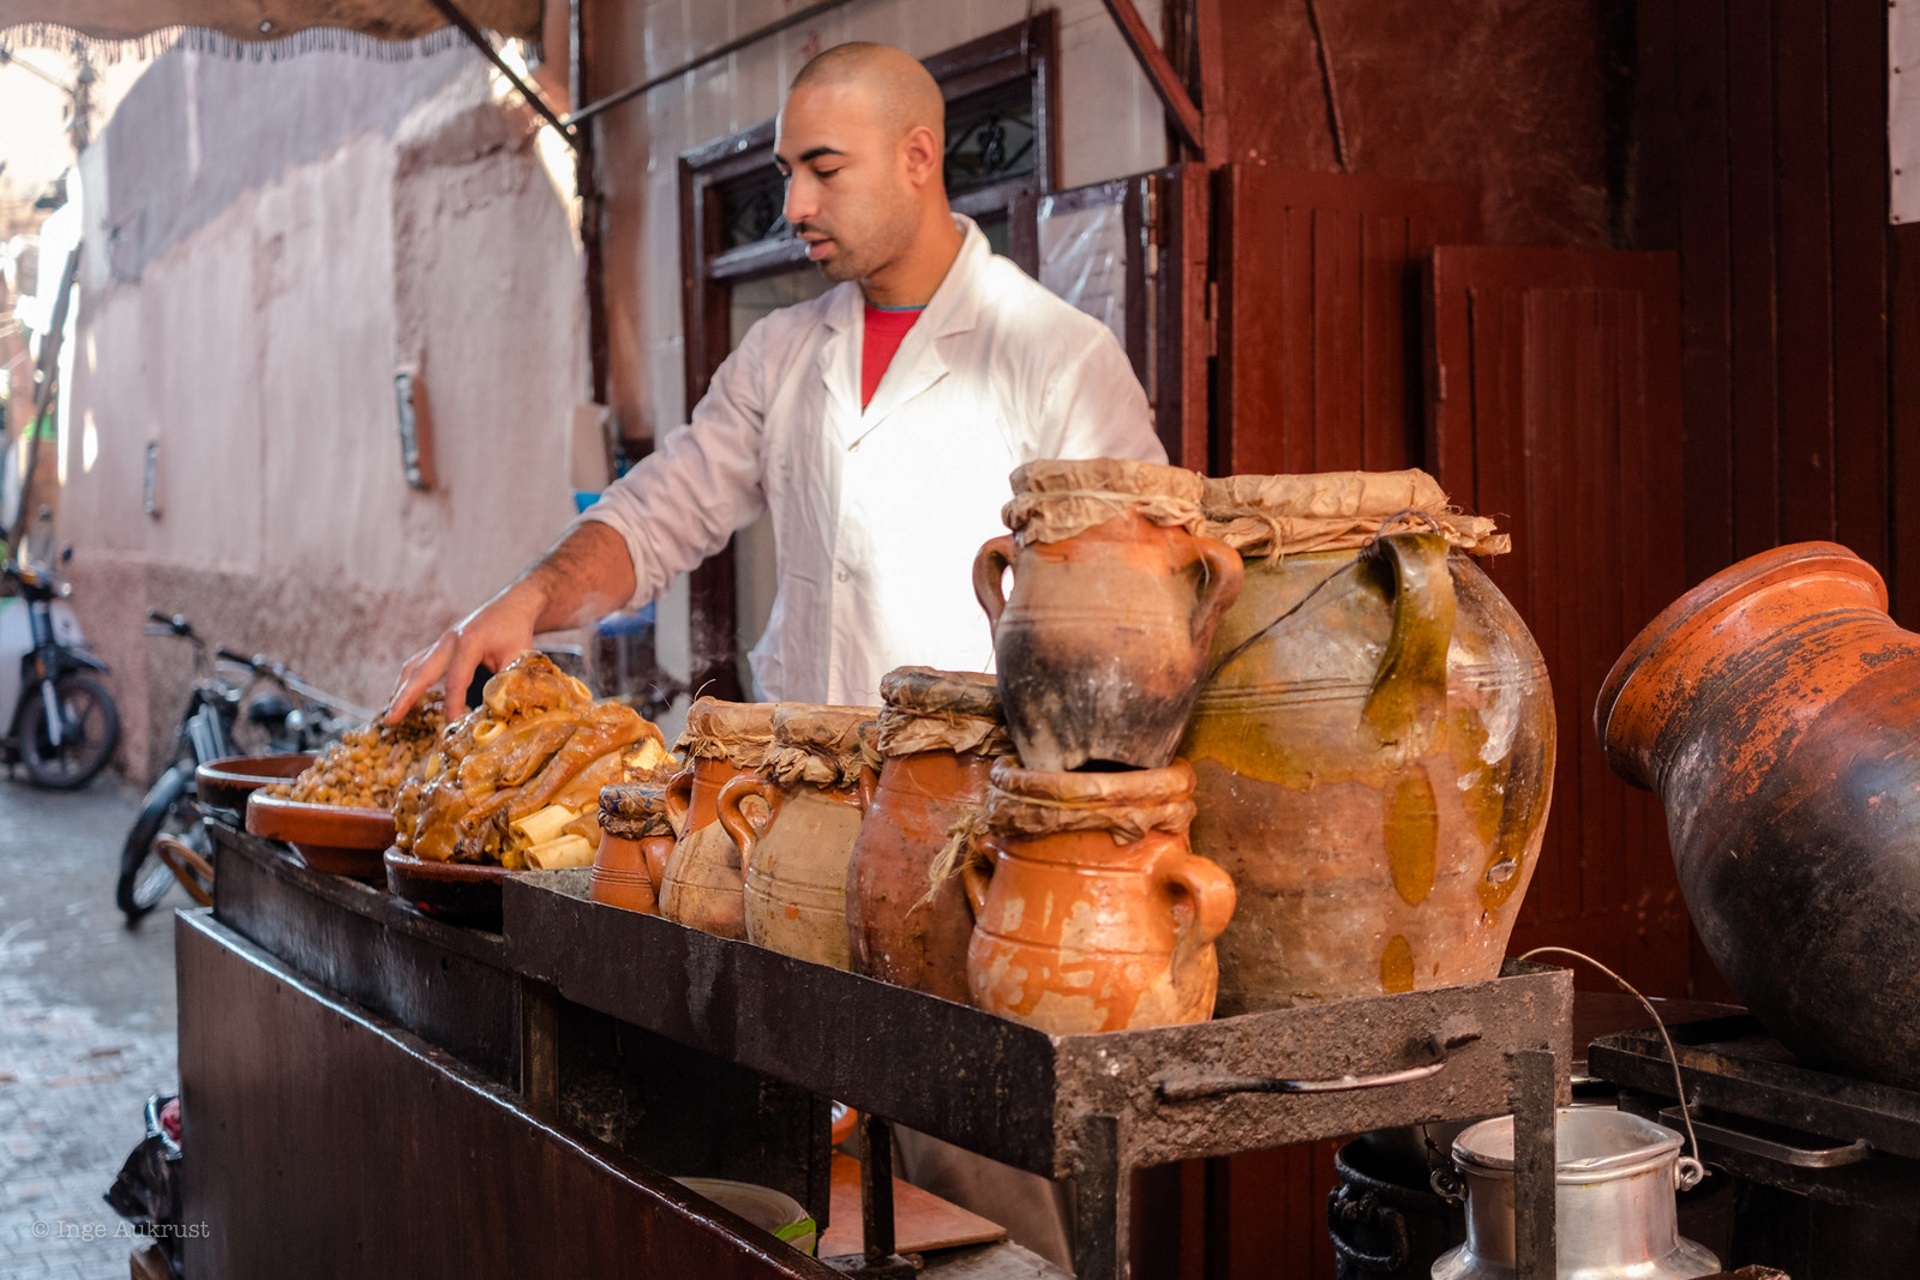 Photo Inge Aukrust, Morocco food